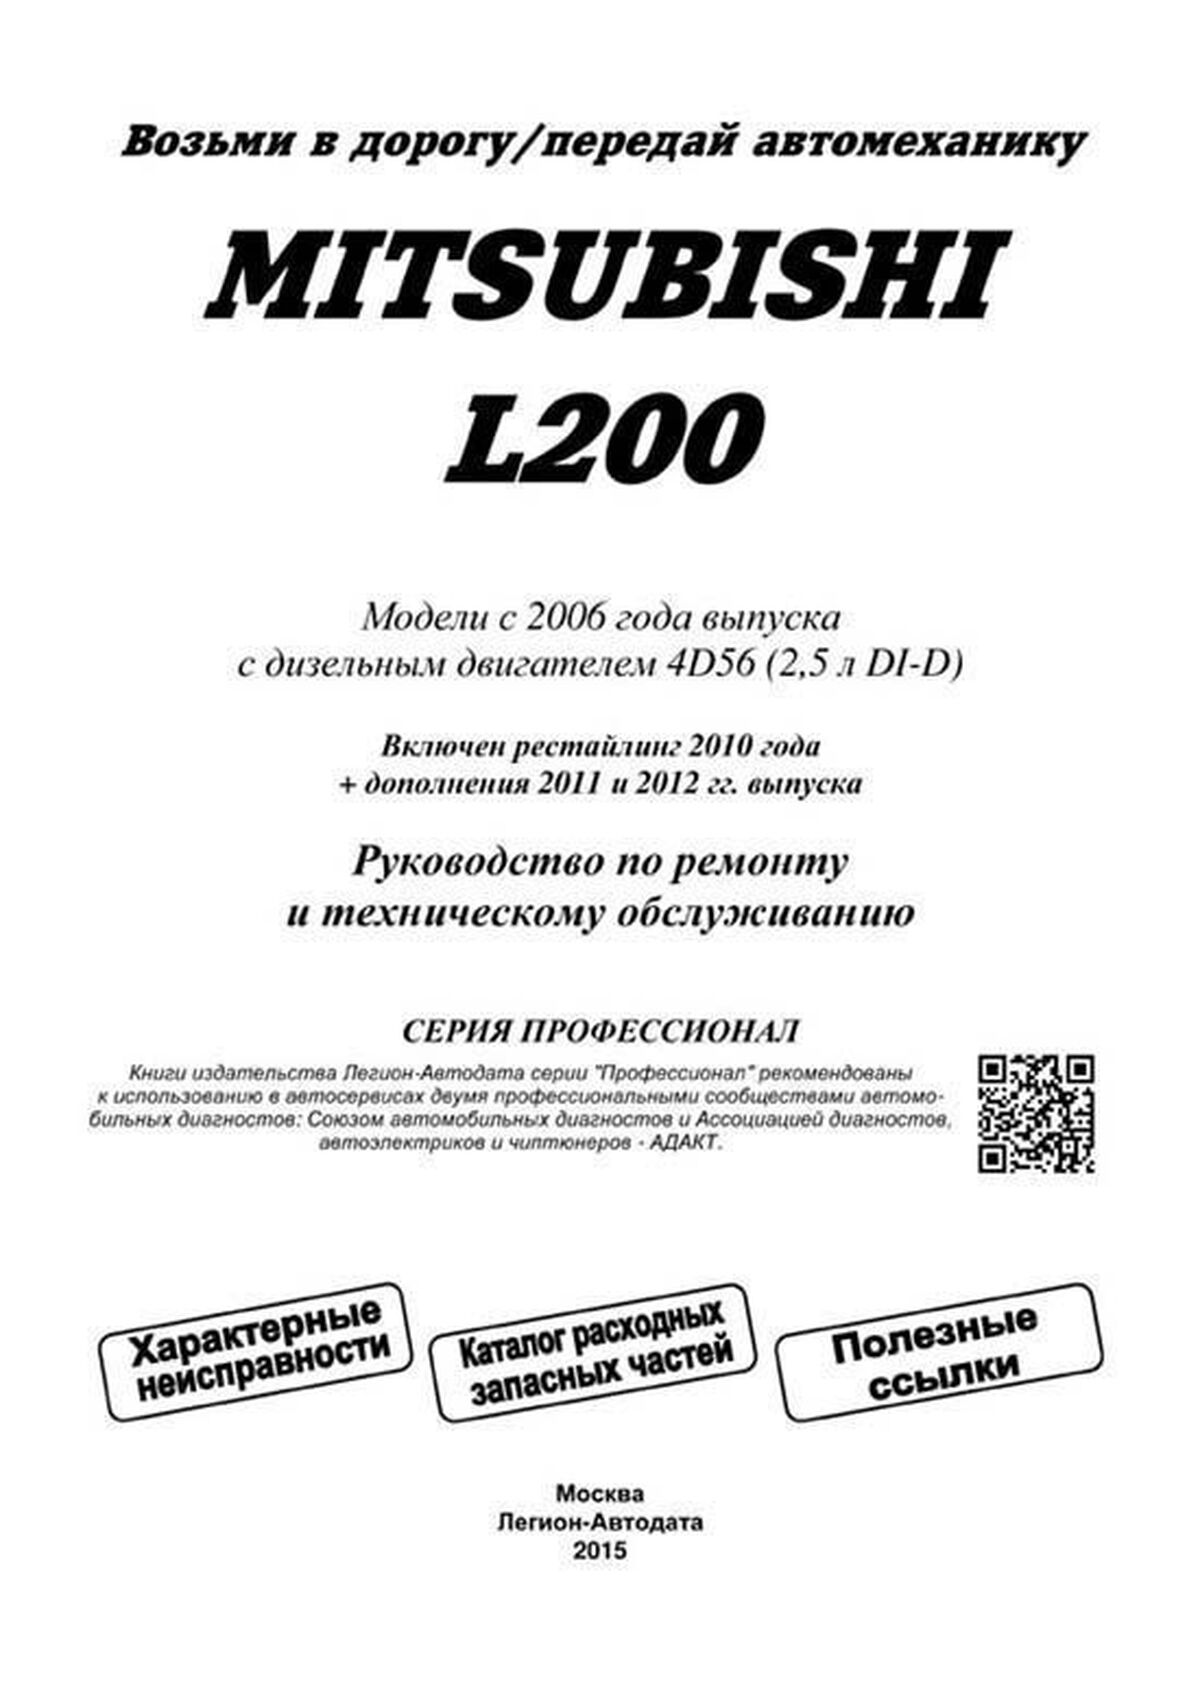 Книга: MITSUBISHI L200 (д) с 2006 г.в. рем., экспл., то, сер.ПРОФ. | Легион-Aвтодата